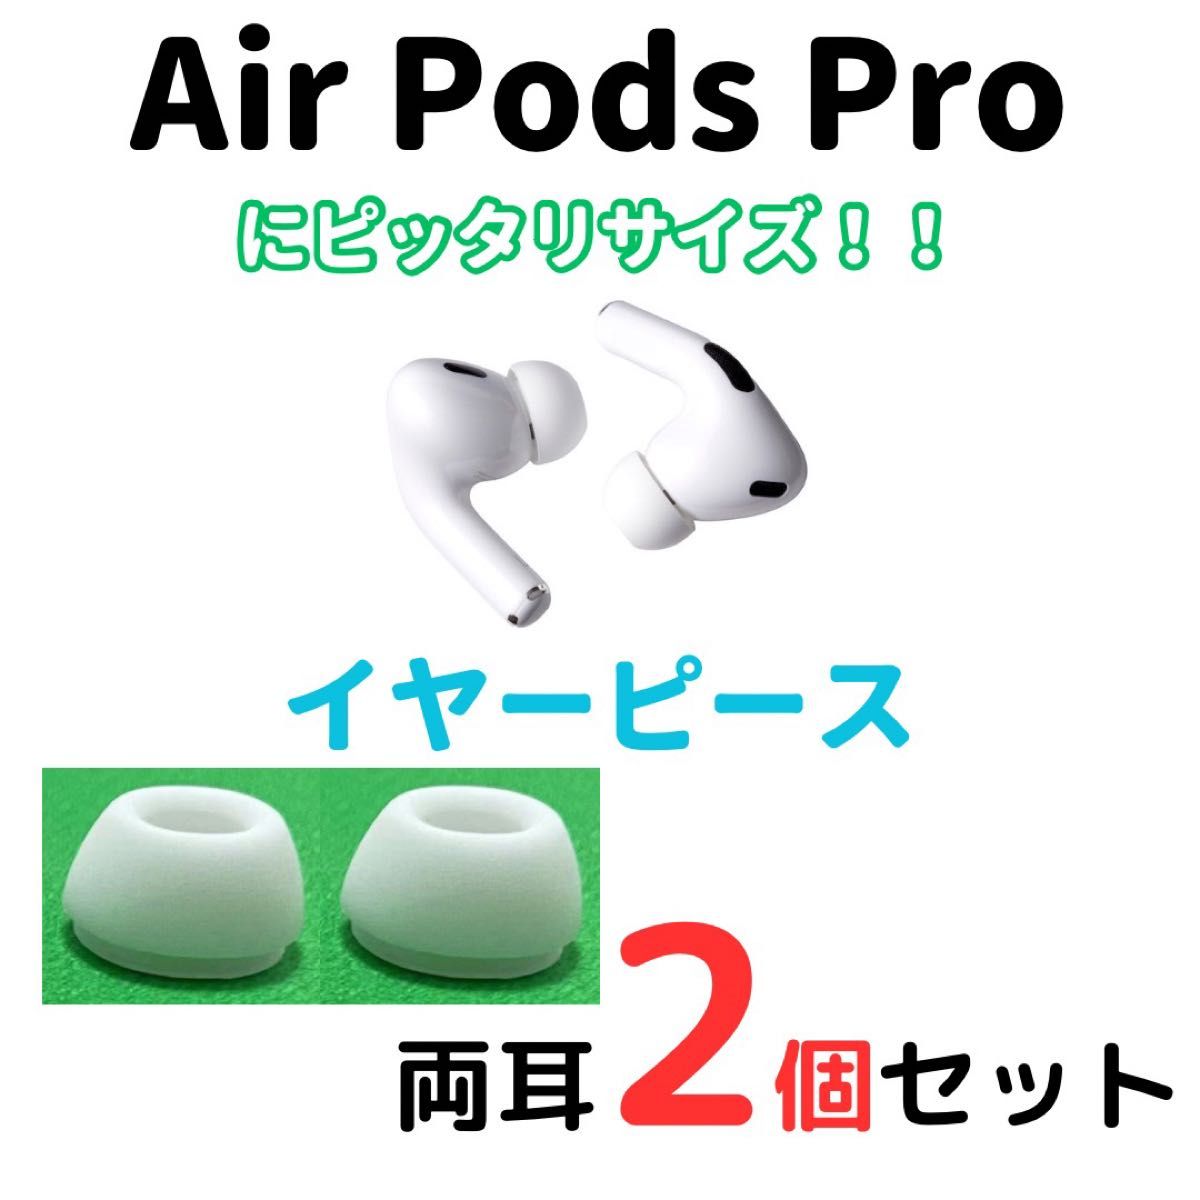 AirPods Pro用 イヤーピース イヤーチップ M 白 2個 エアーポッツ